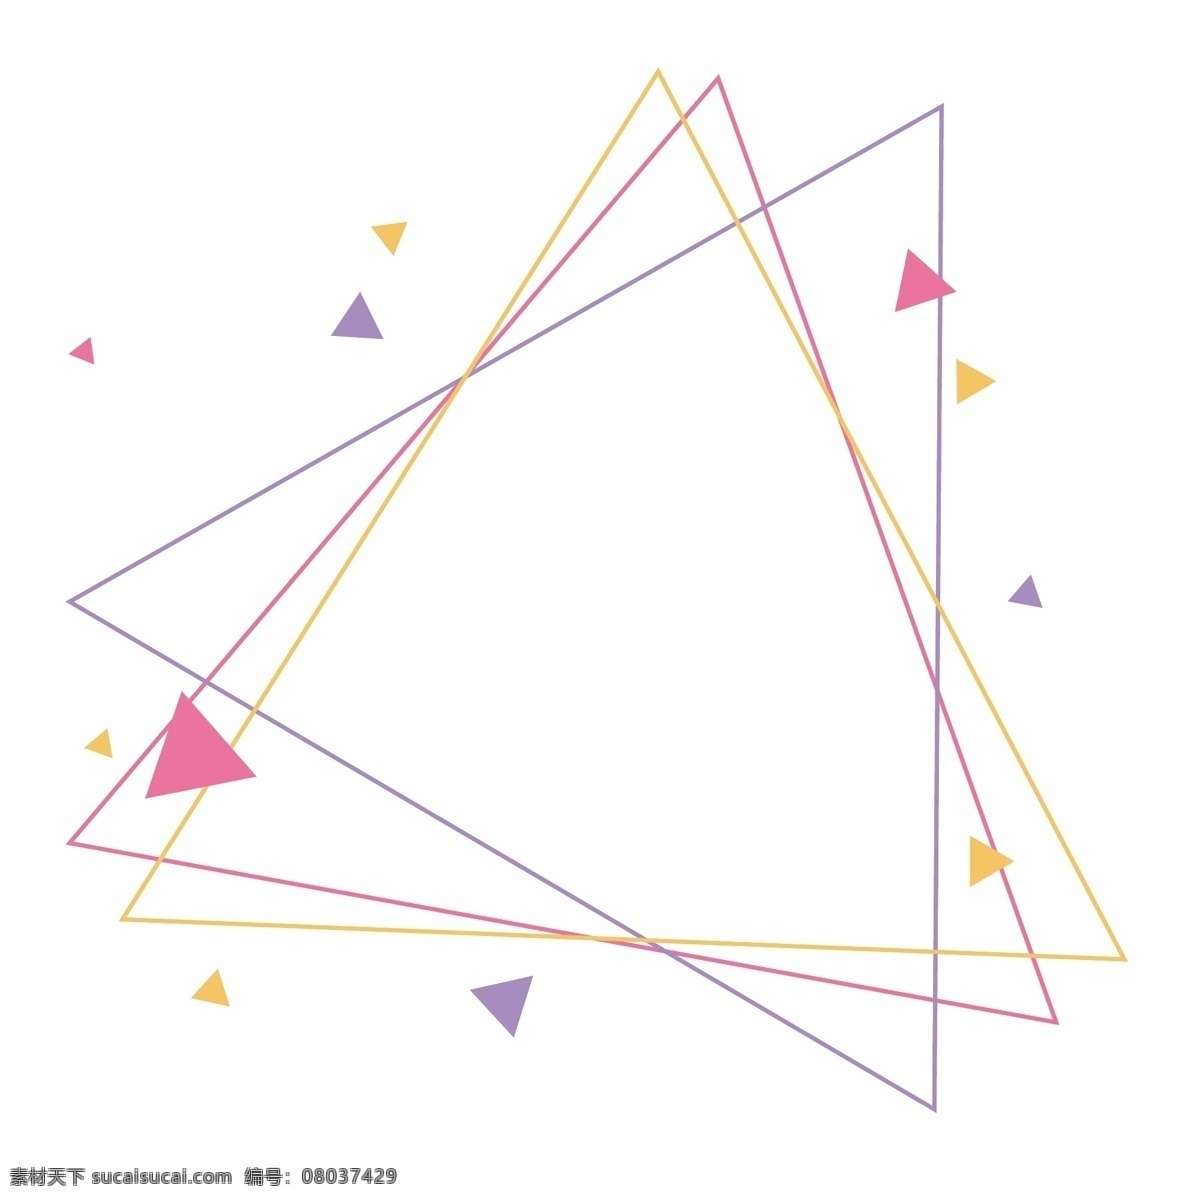 彩色 三角 矢量 细 边框 免 抠 彩色三角 卡通三角 马卡龙色 糖果色 三色 红黄蓝 三角形 三角边框 撞色 简约 漂浮三角形